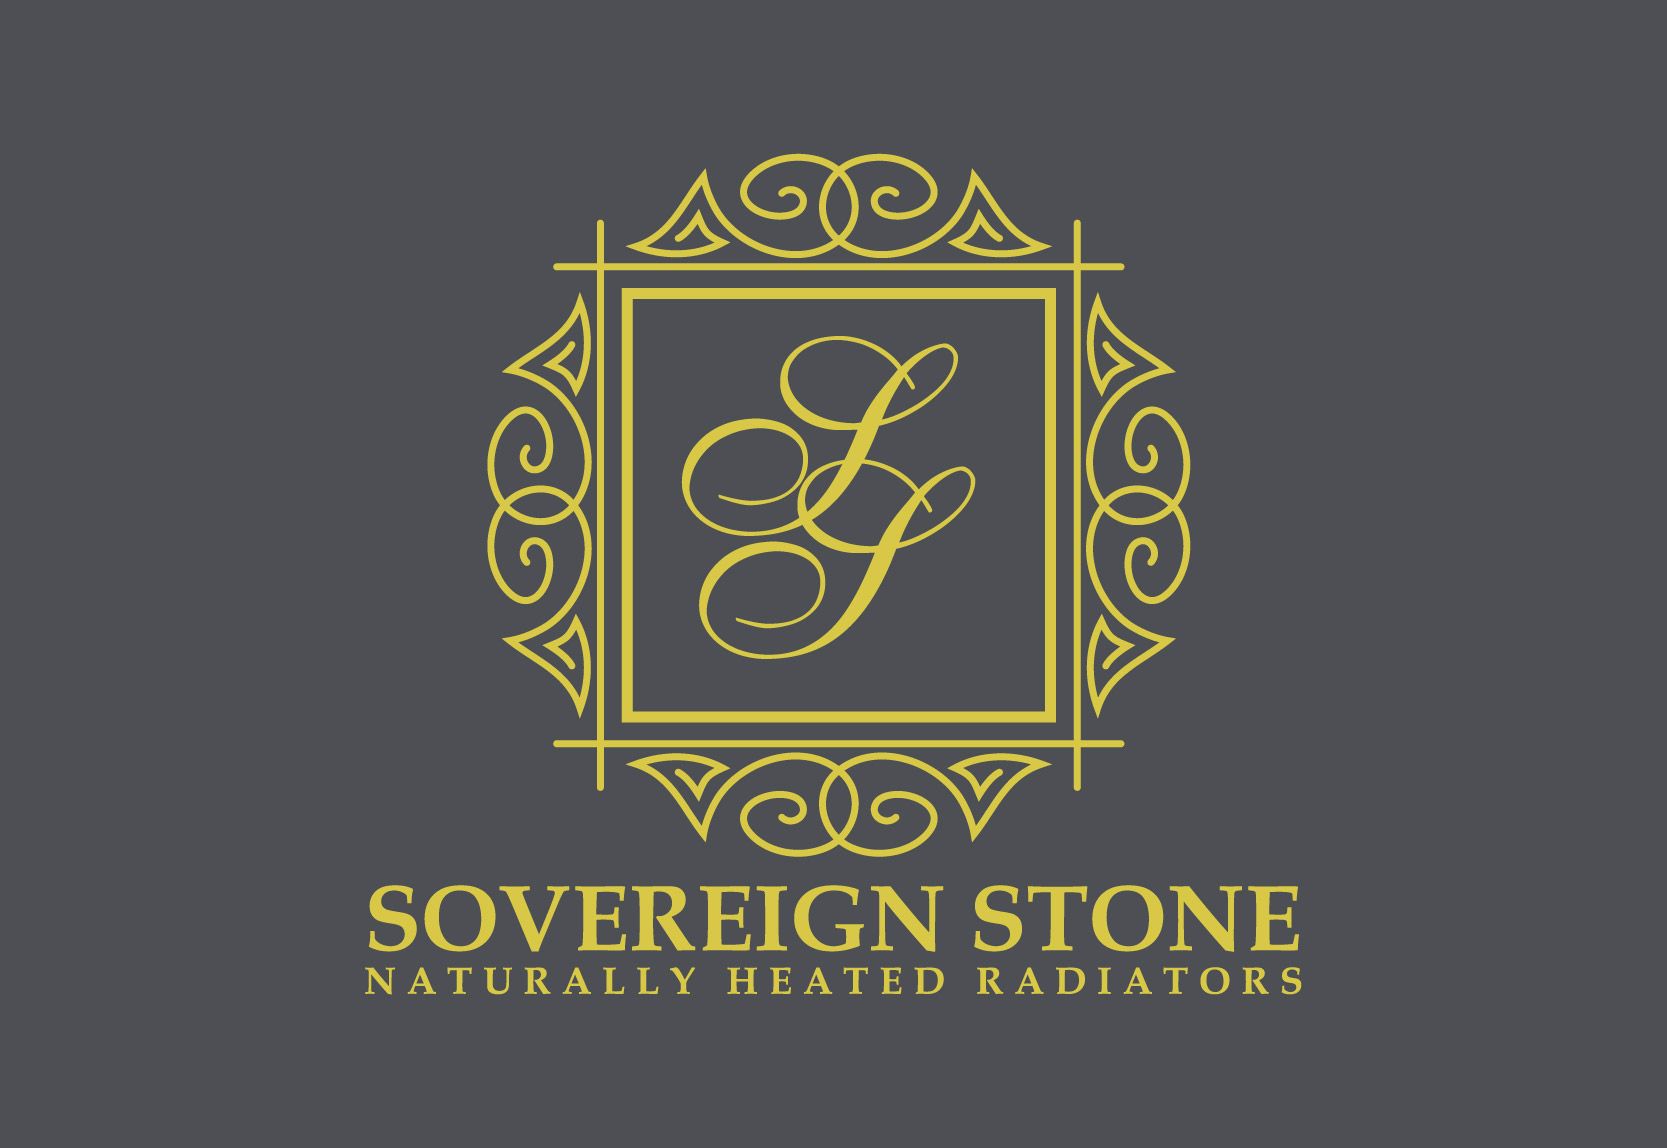 Sovereign Stone Radiators